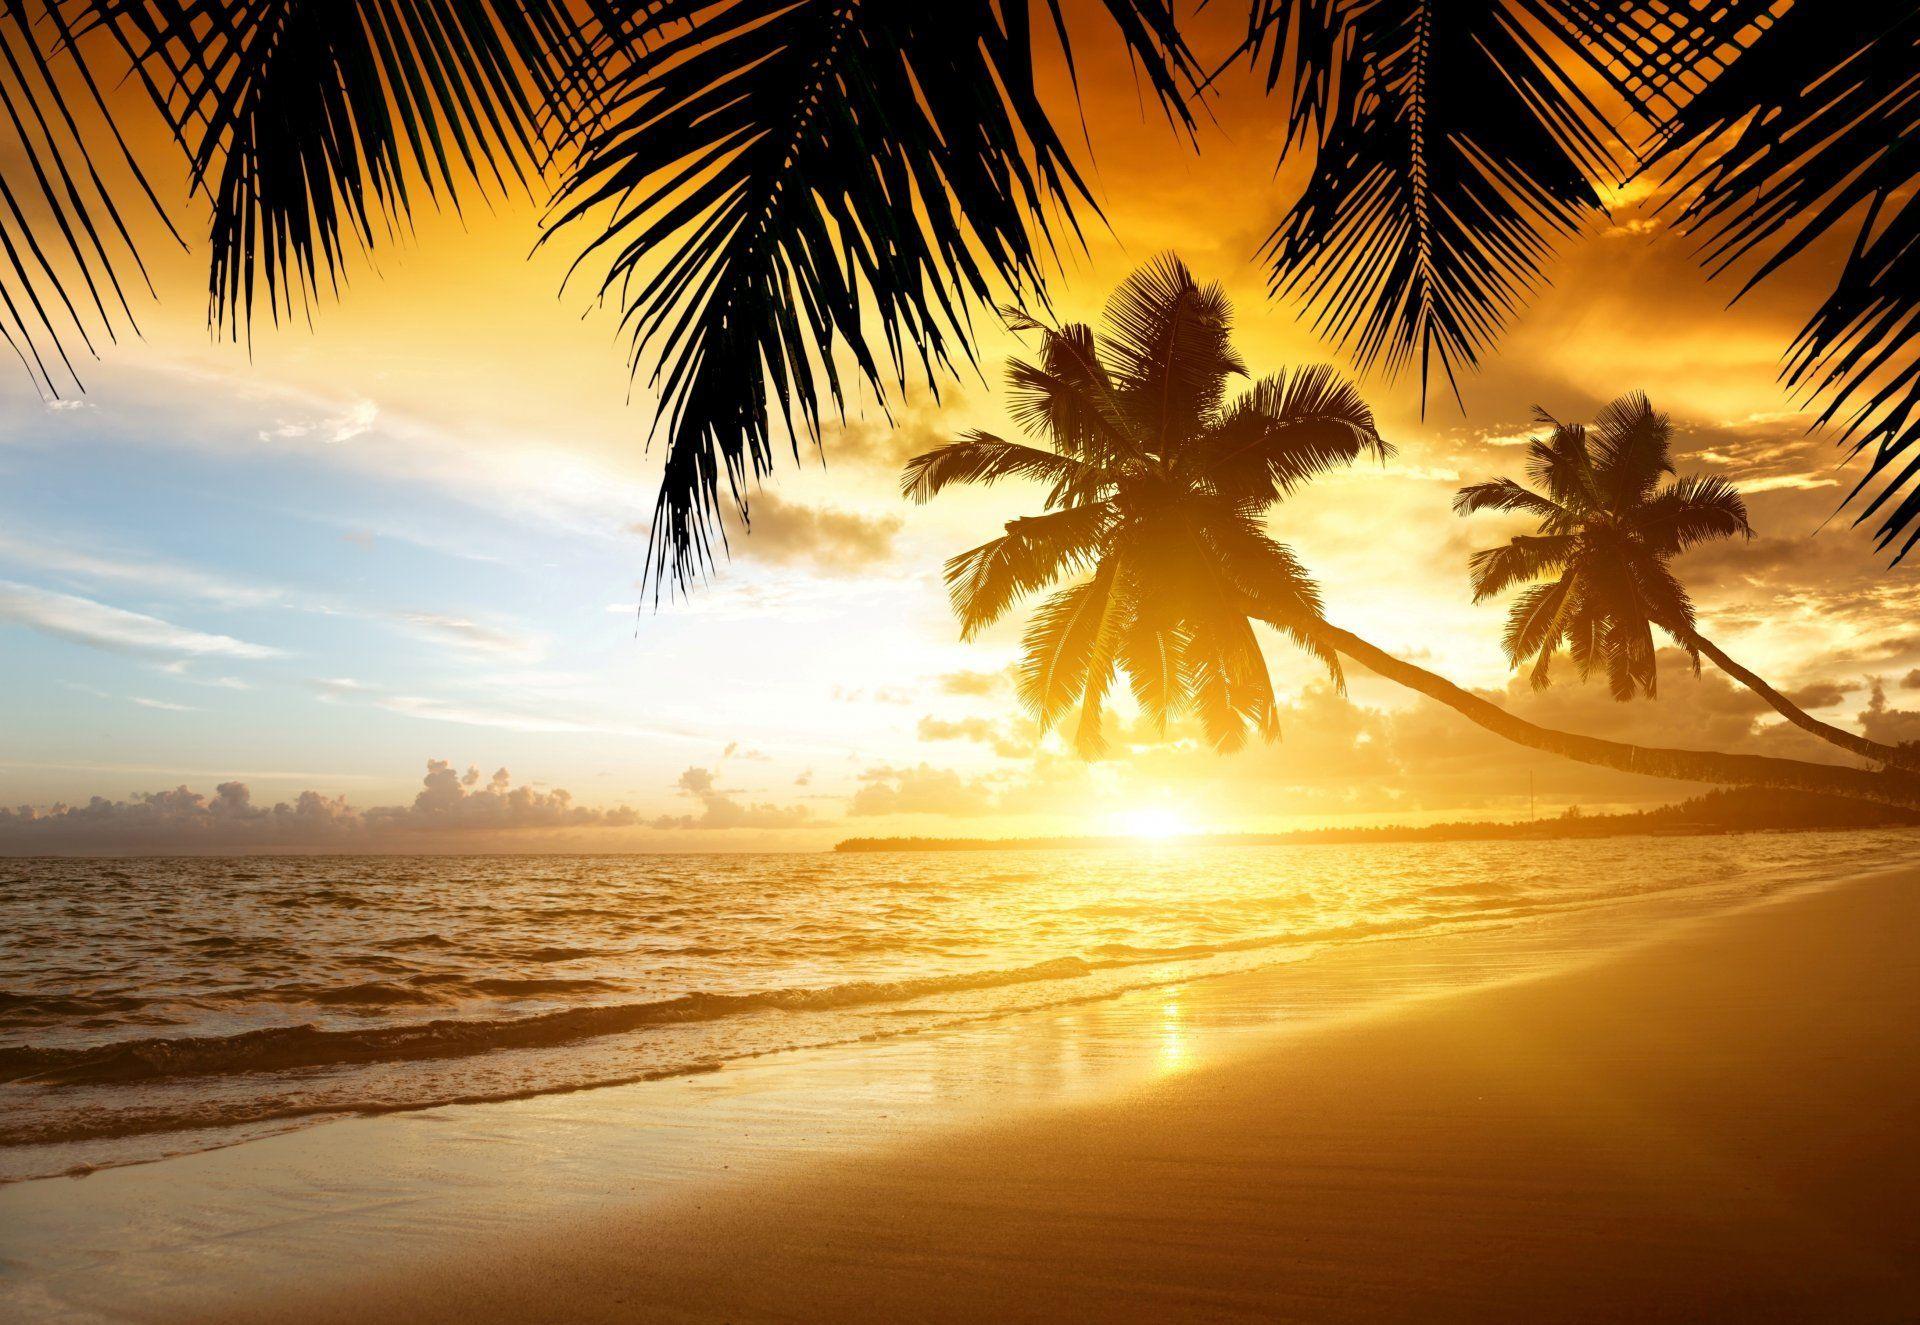 tropical sunset paradise beach coast sea ocean palm summer sand